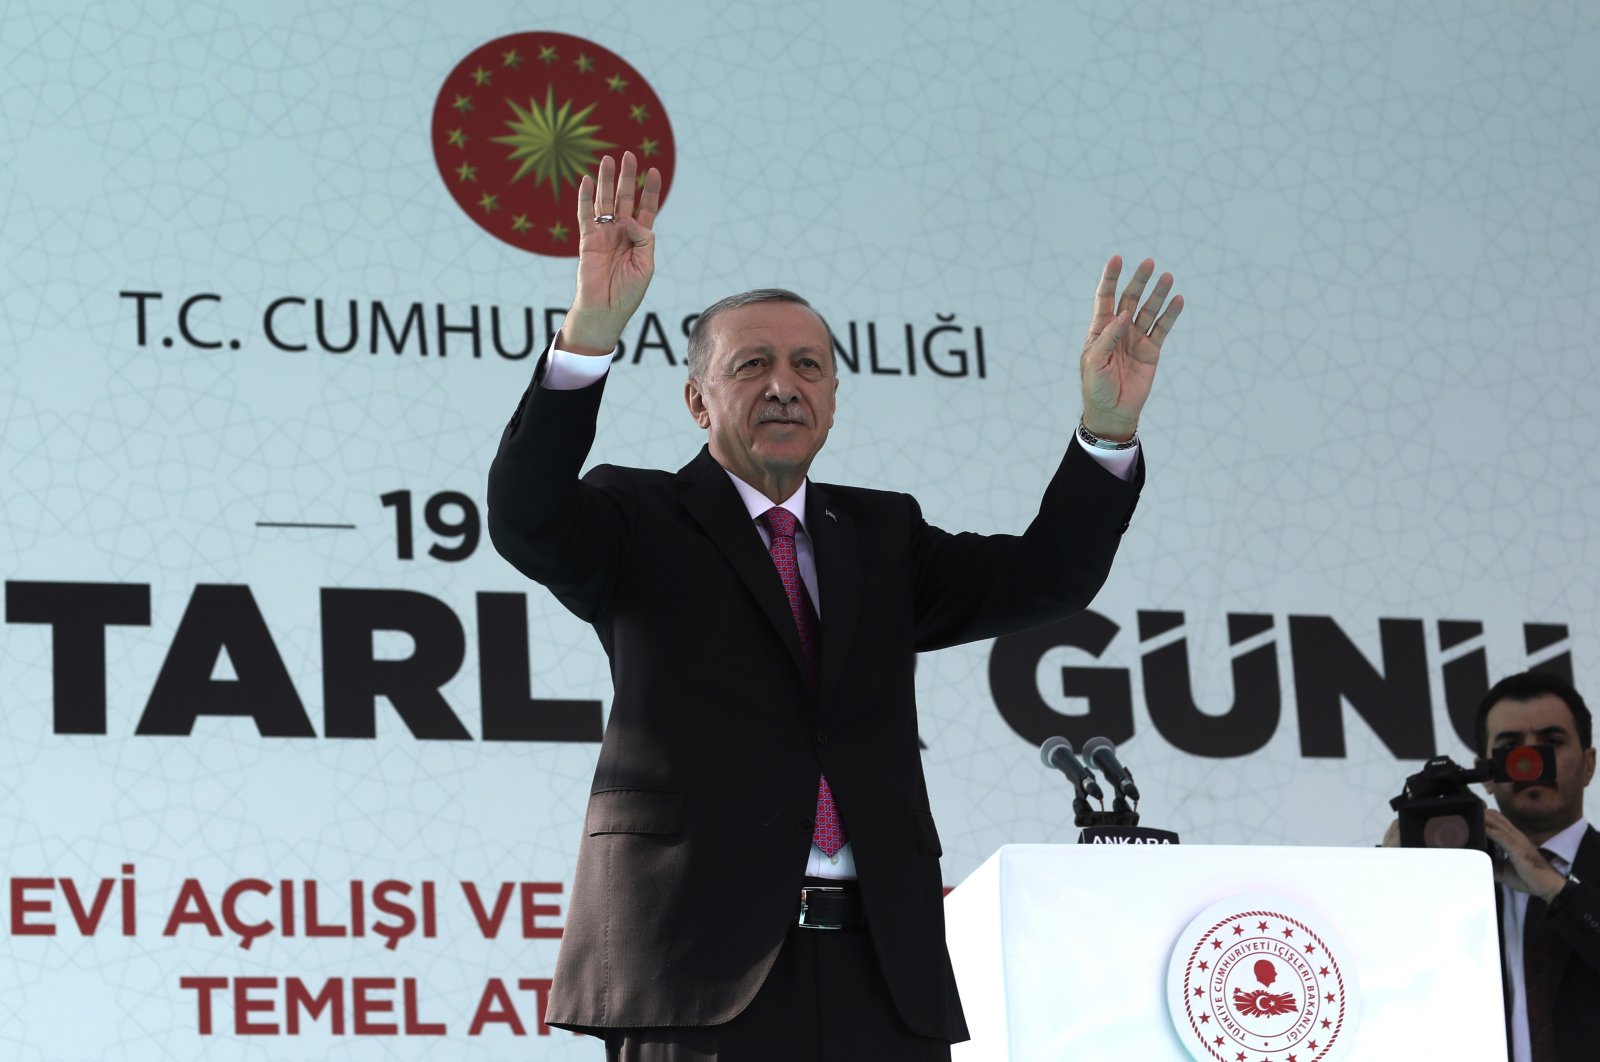 Ya, pemilu terpenting dunia akan diadakan di Türkiye pada tahun 2023